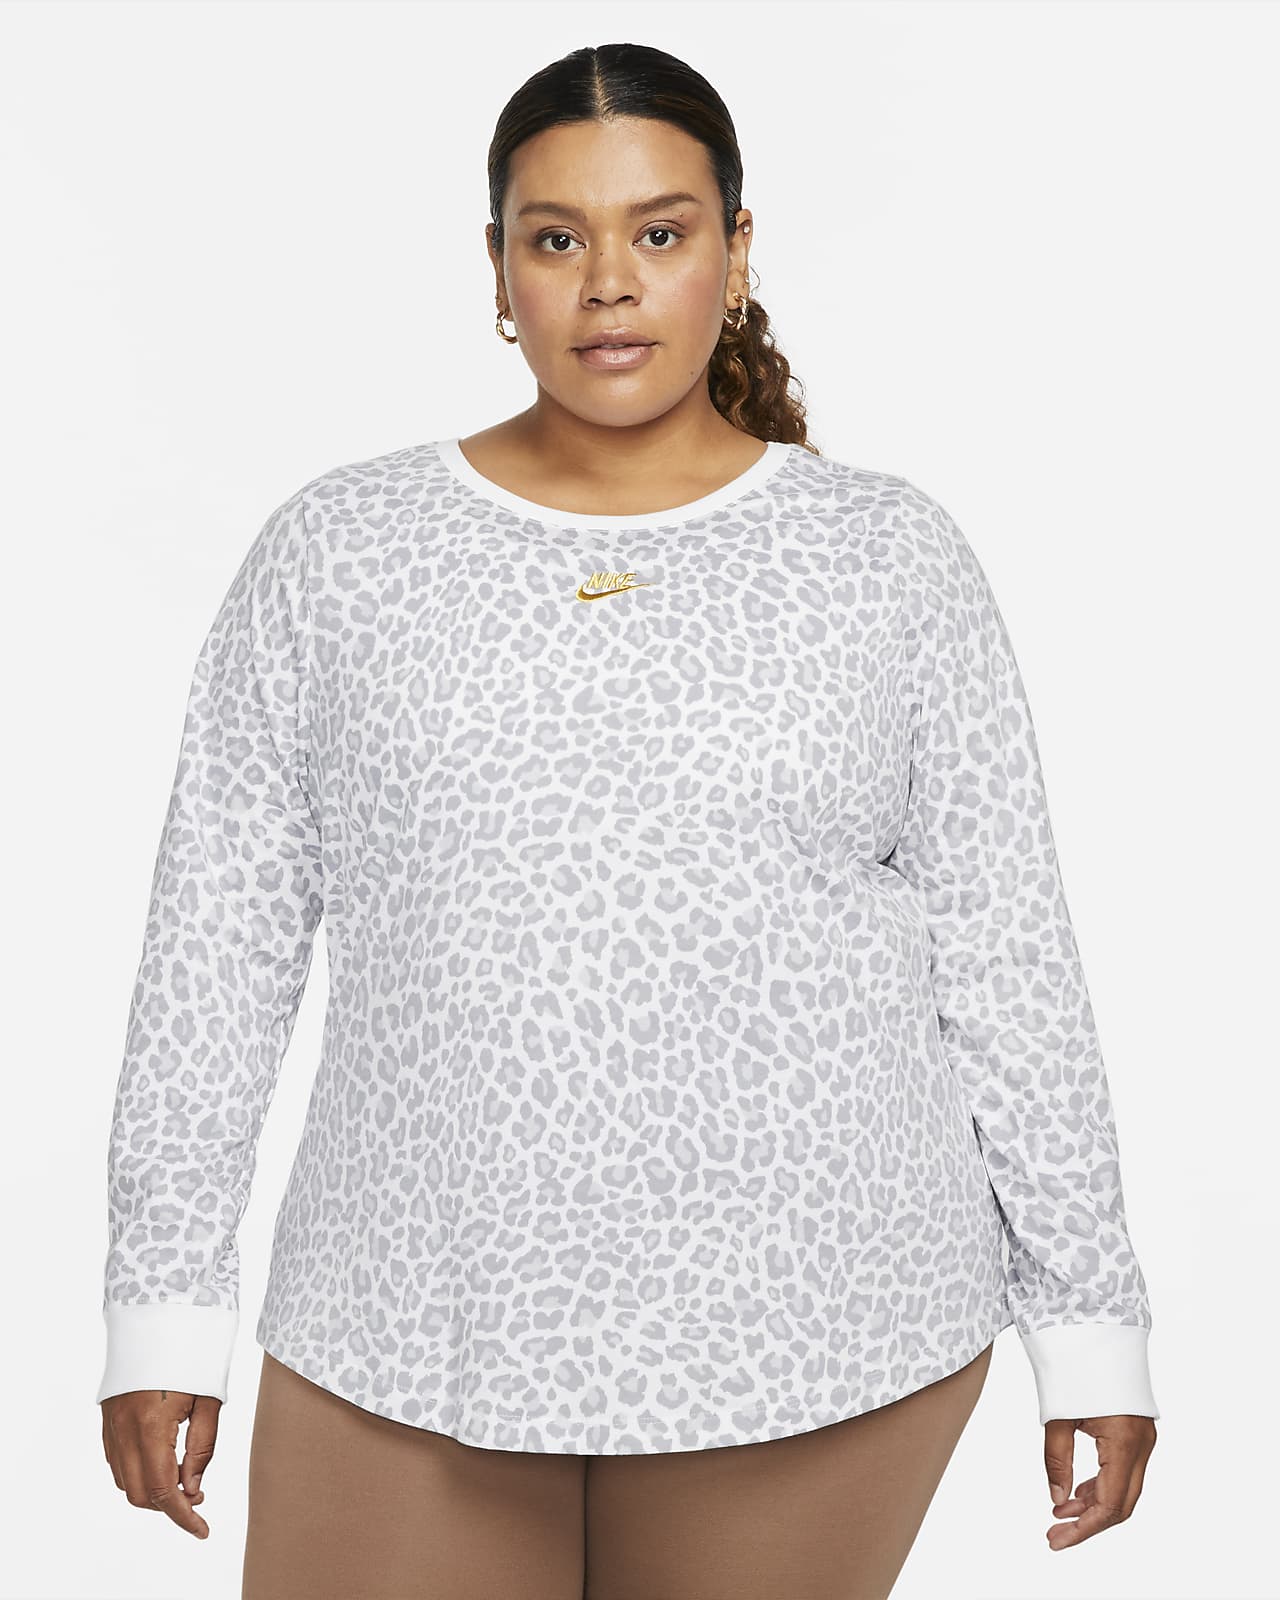 Nike Sportswear Women's Long-Sleeve T-Shirt (Plus Size)